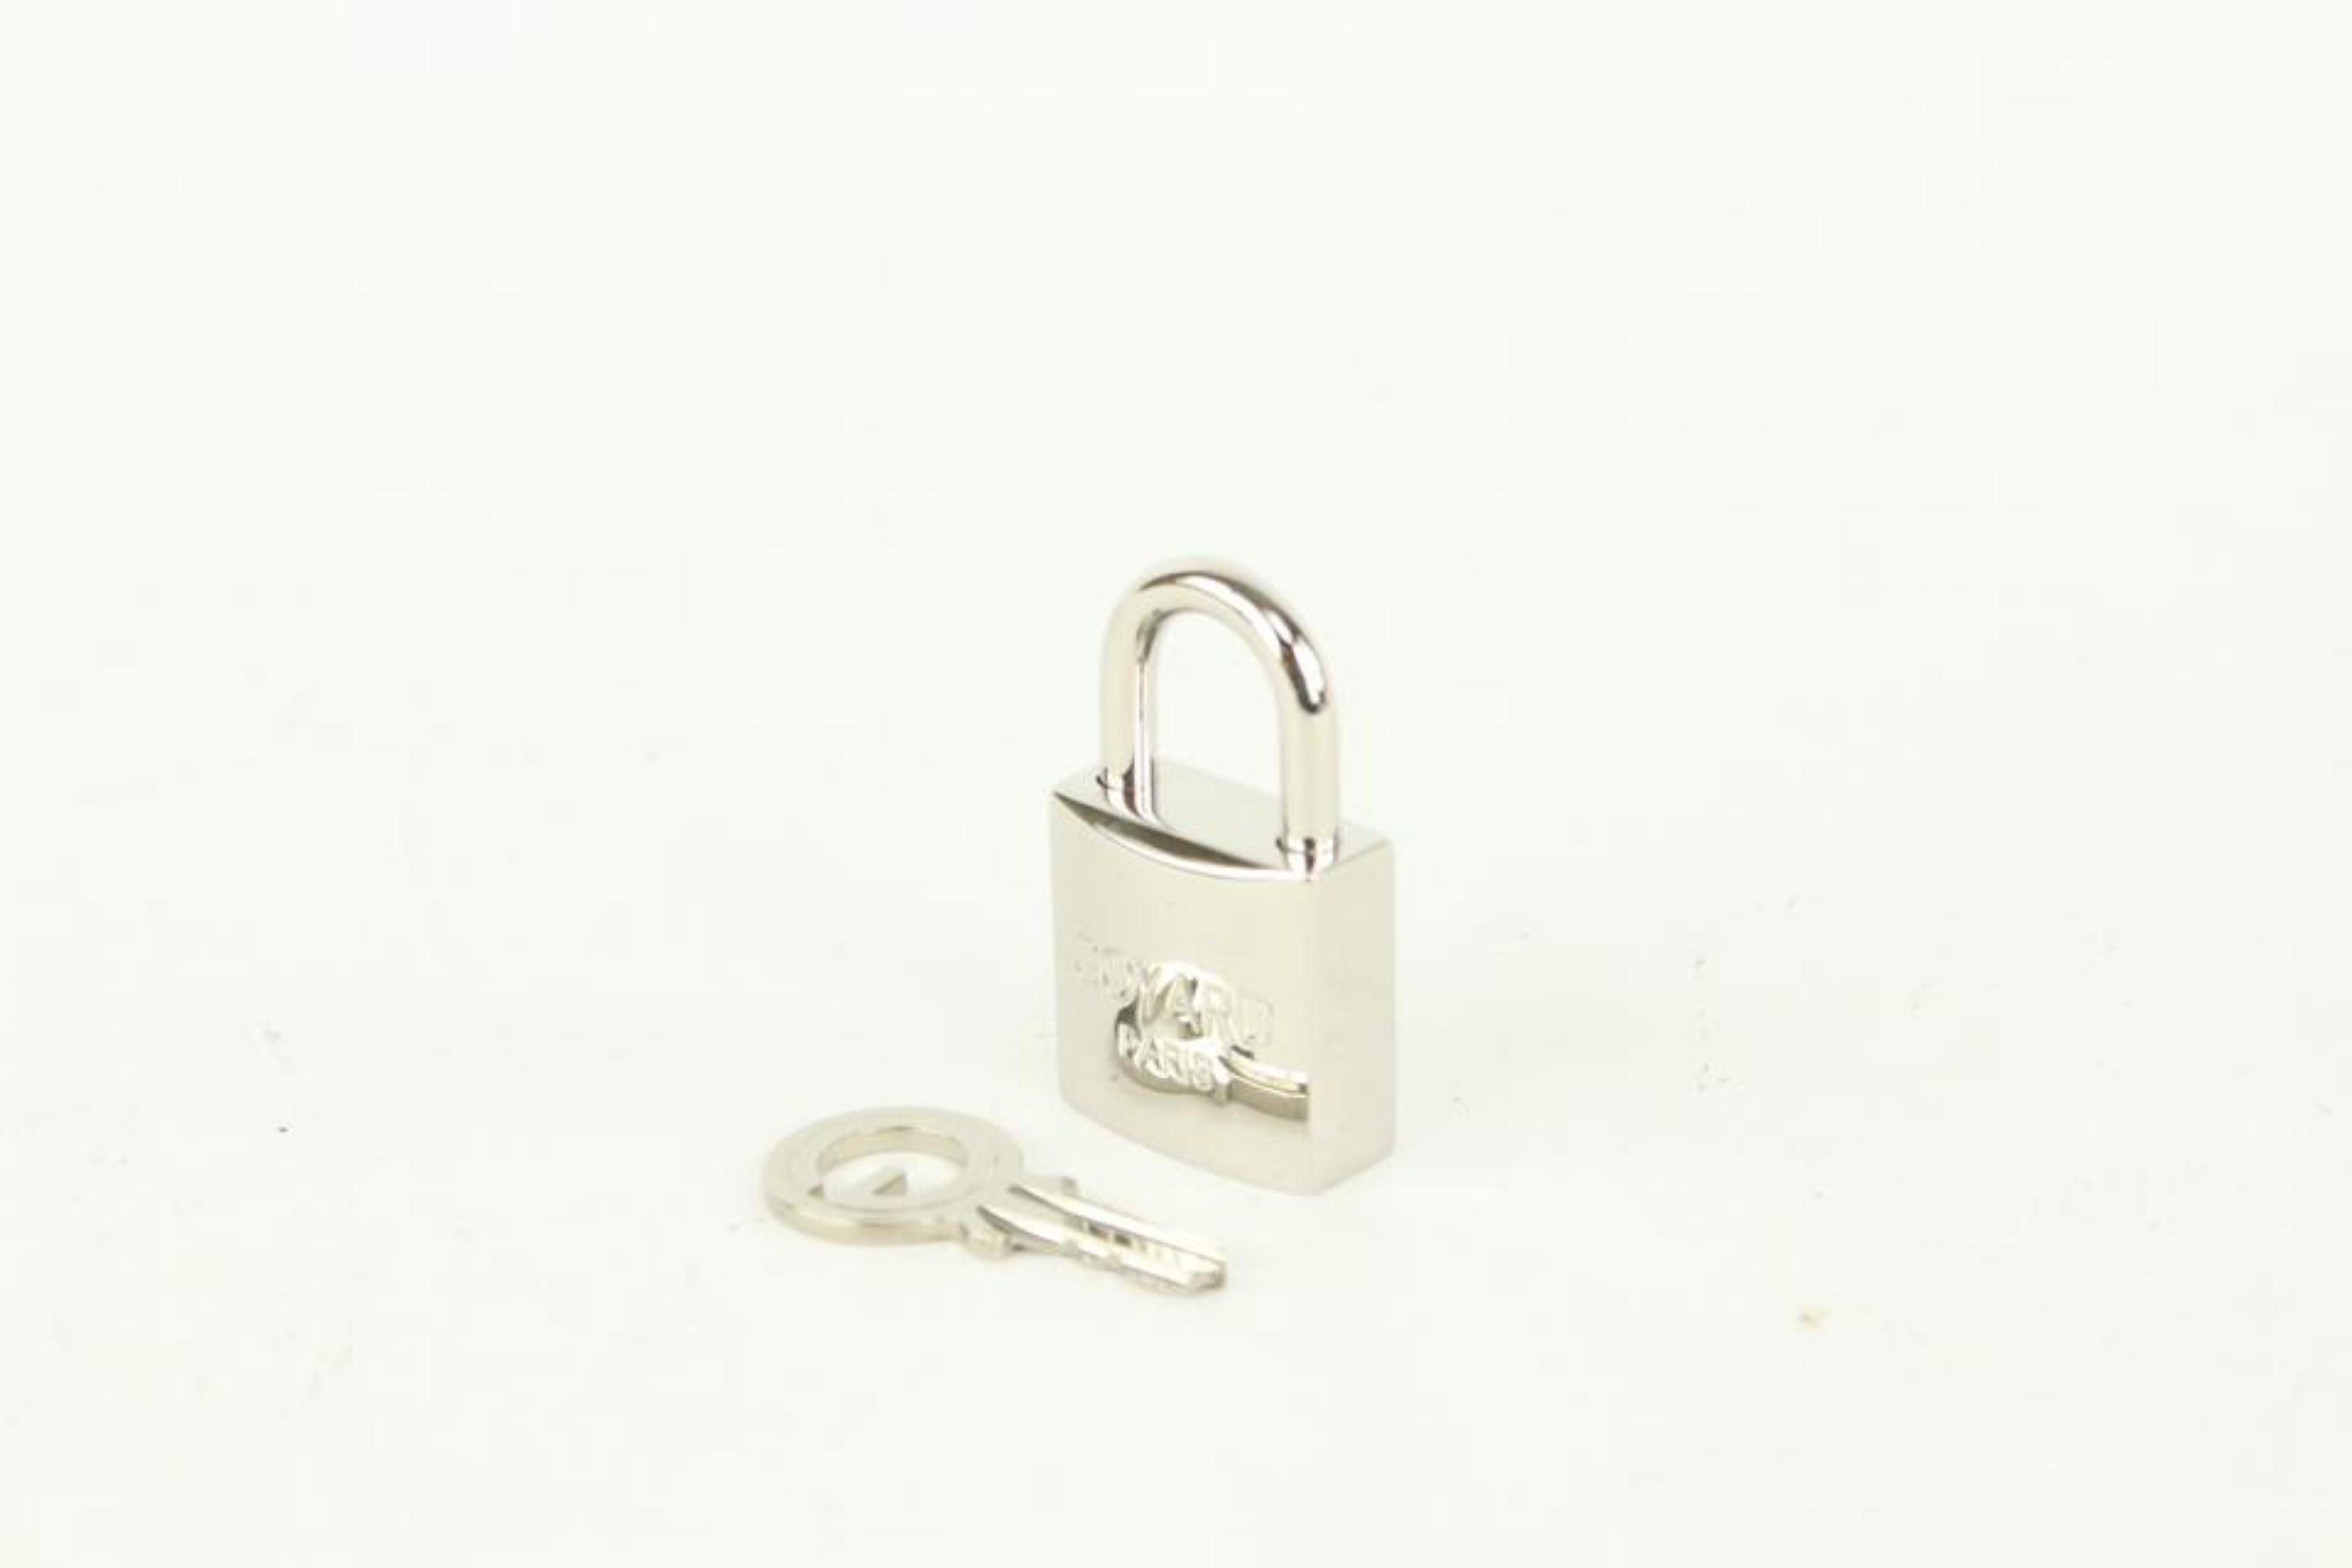 Goyard Silver Lock and Key Set Cadena Bag Charm 1012gy30 2